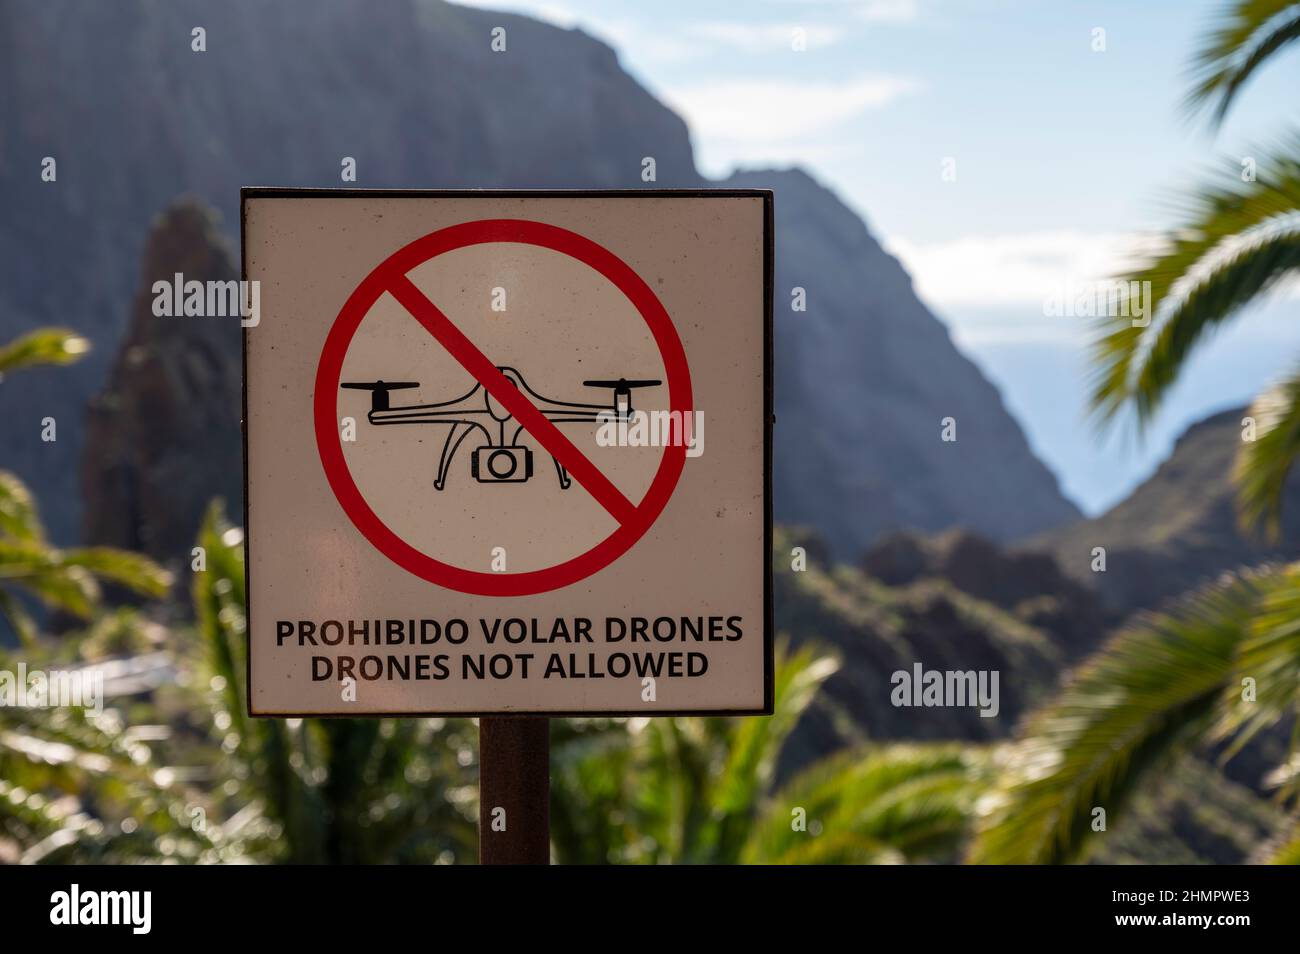 Cartello segnaletico in lingua spagnola e inglese, fuchi non ammessi, zona libera da droni nel pittoresco villaggio di Masca, isola di Tenerife, Canarie, Spagna Foto Stock